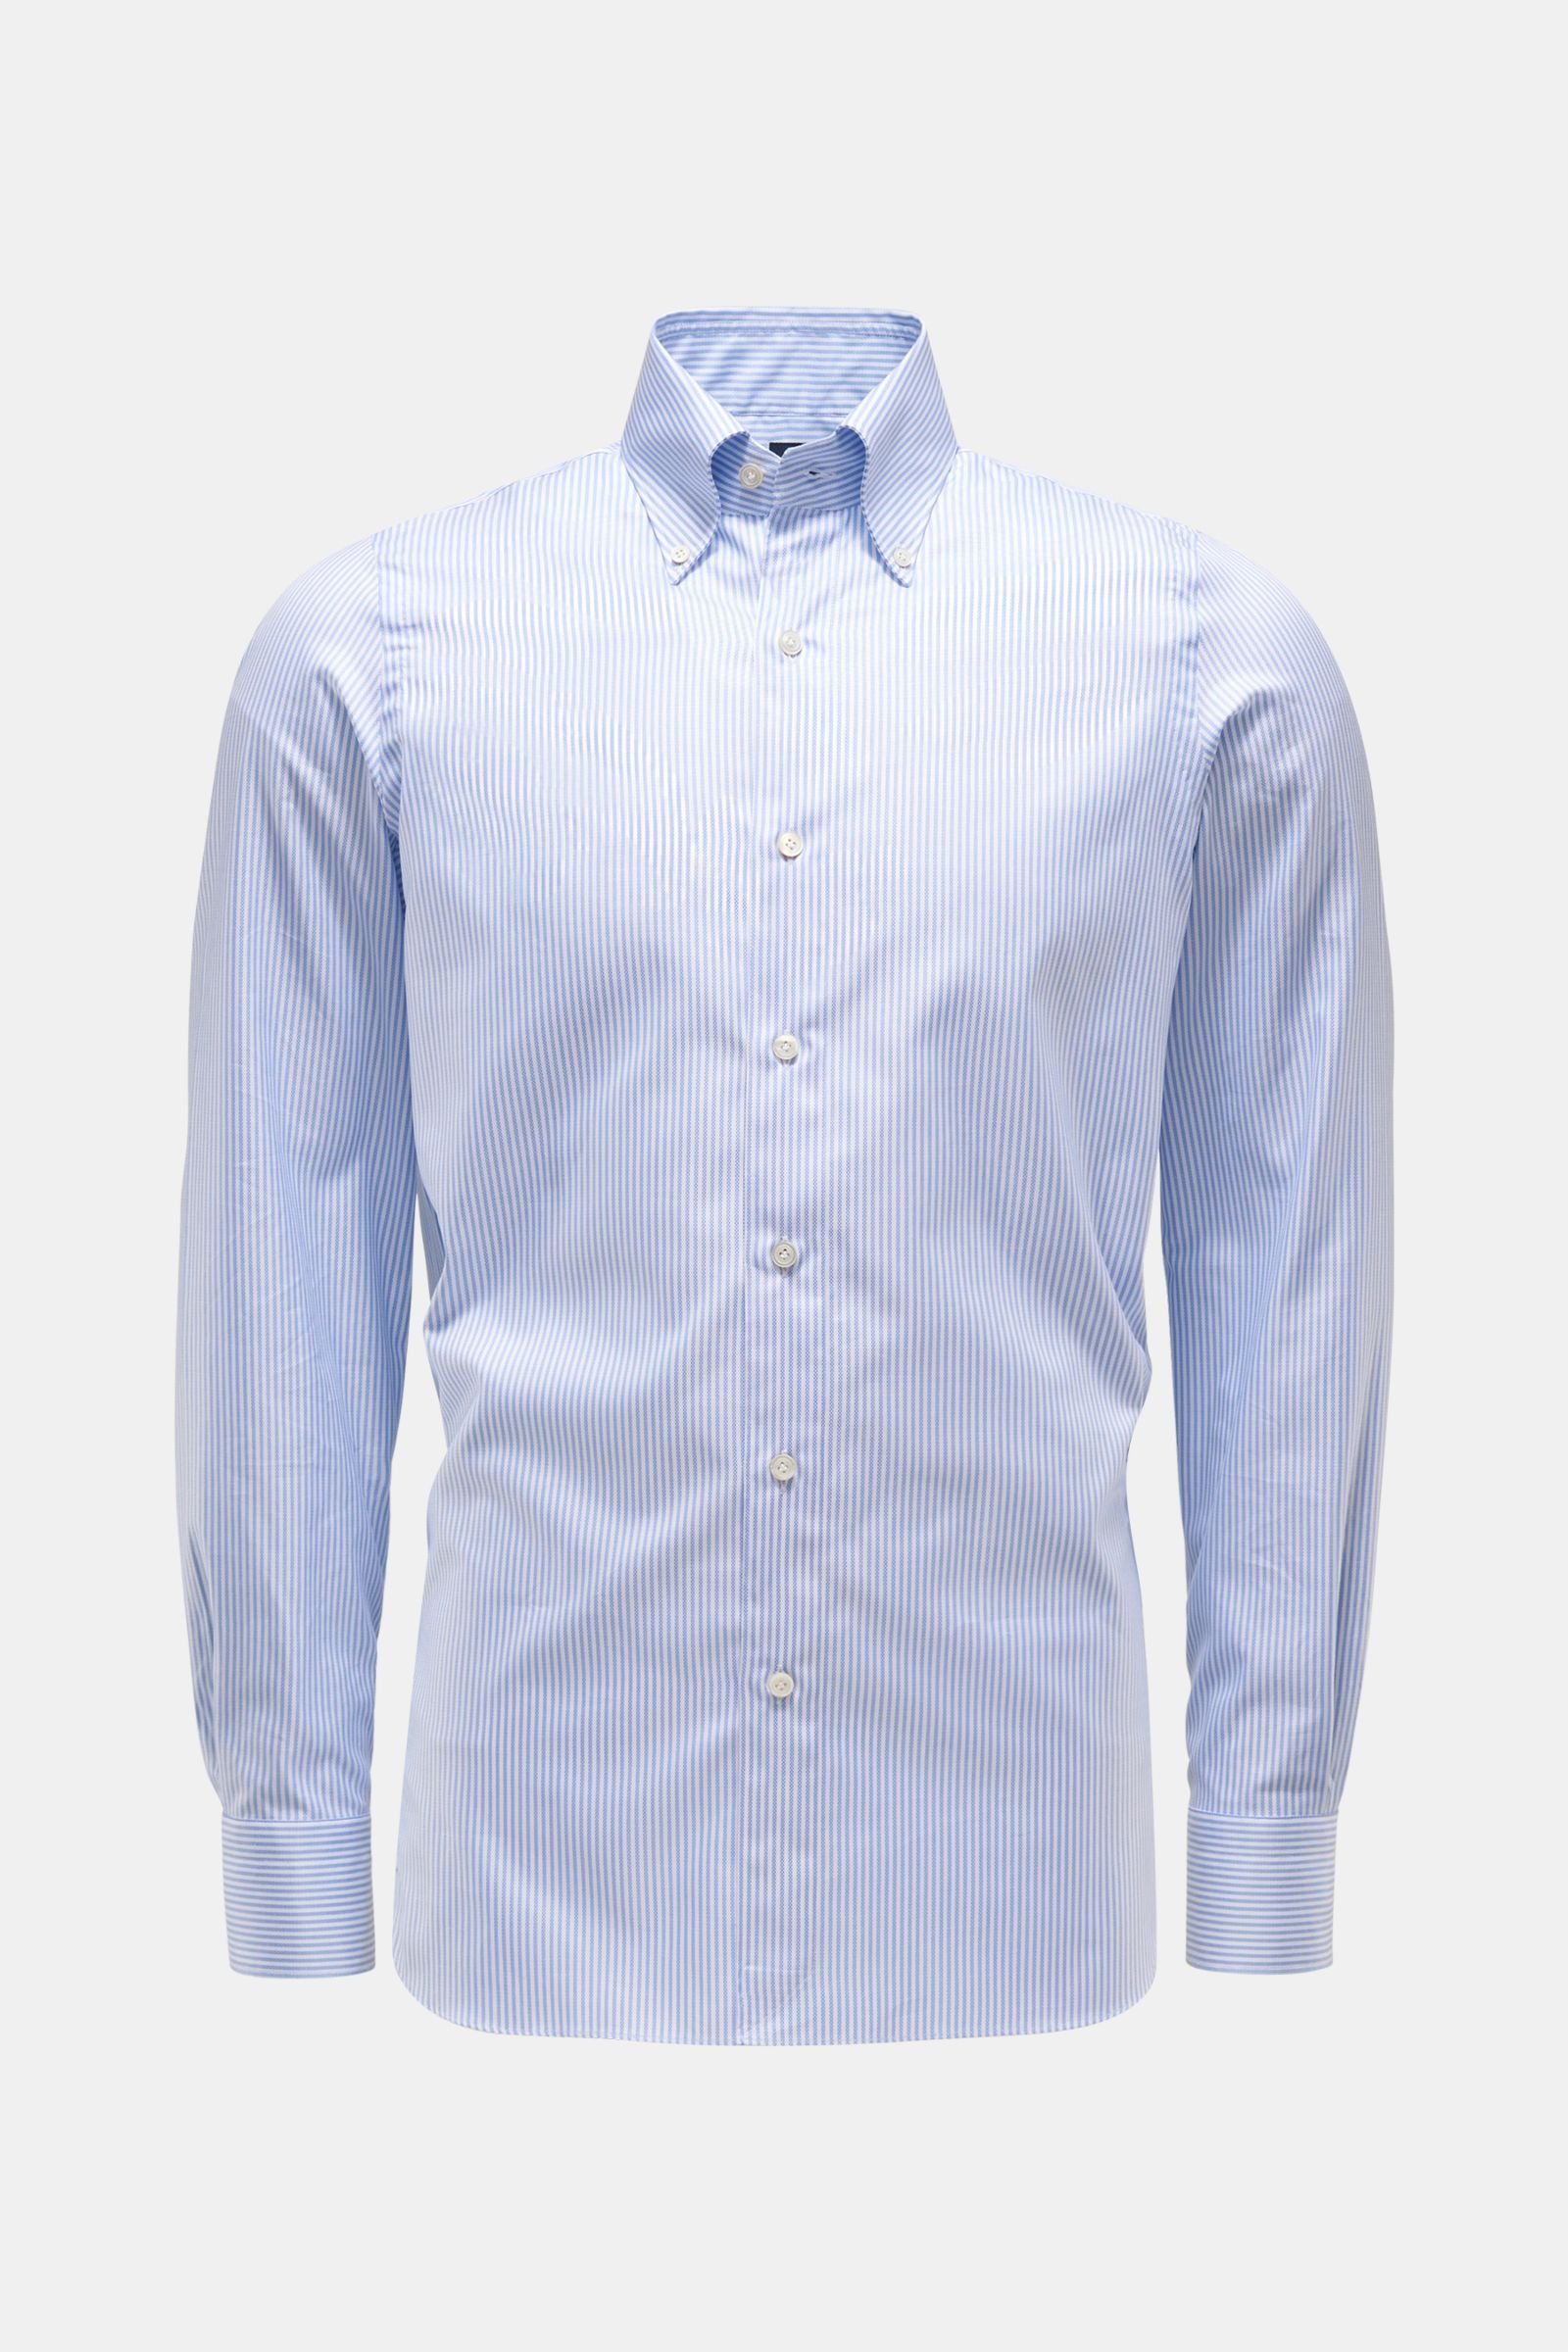 Oxfordhemd 'Lucio Gaeta' Button-Down-Kragen hellblau/weiß gestreift 